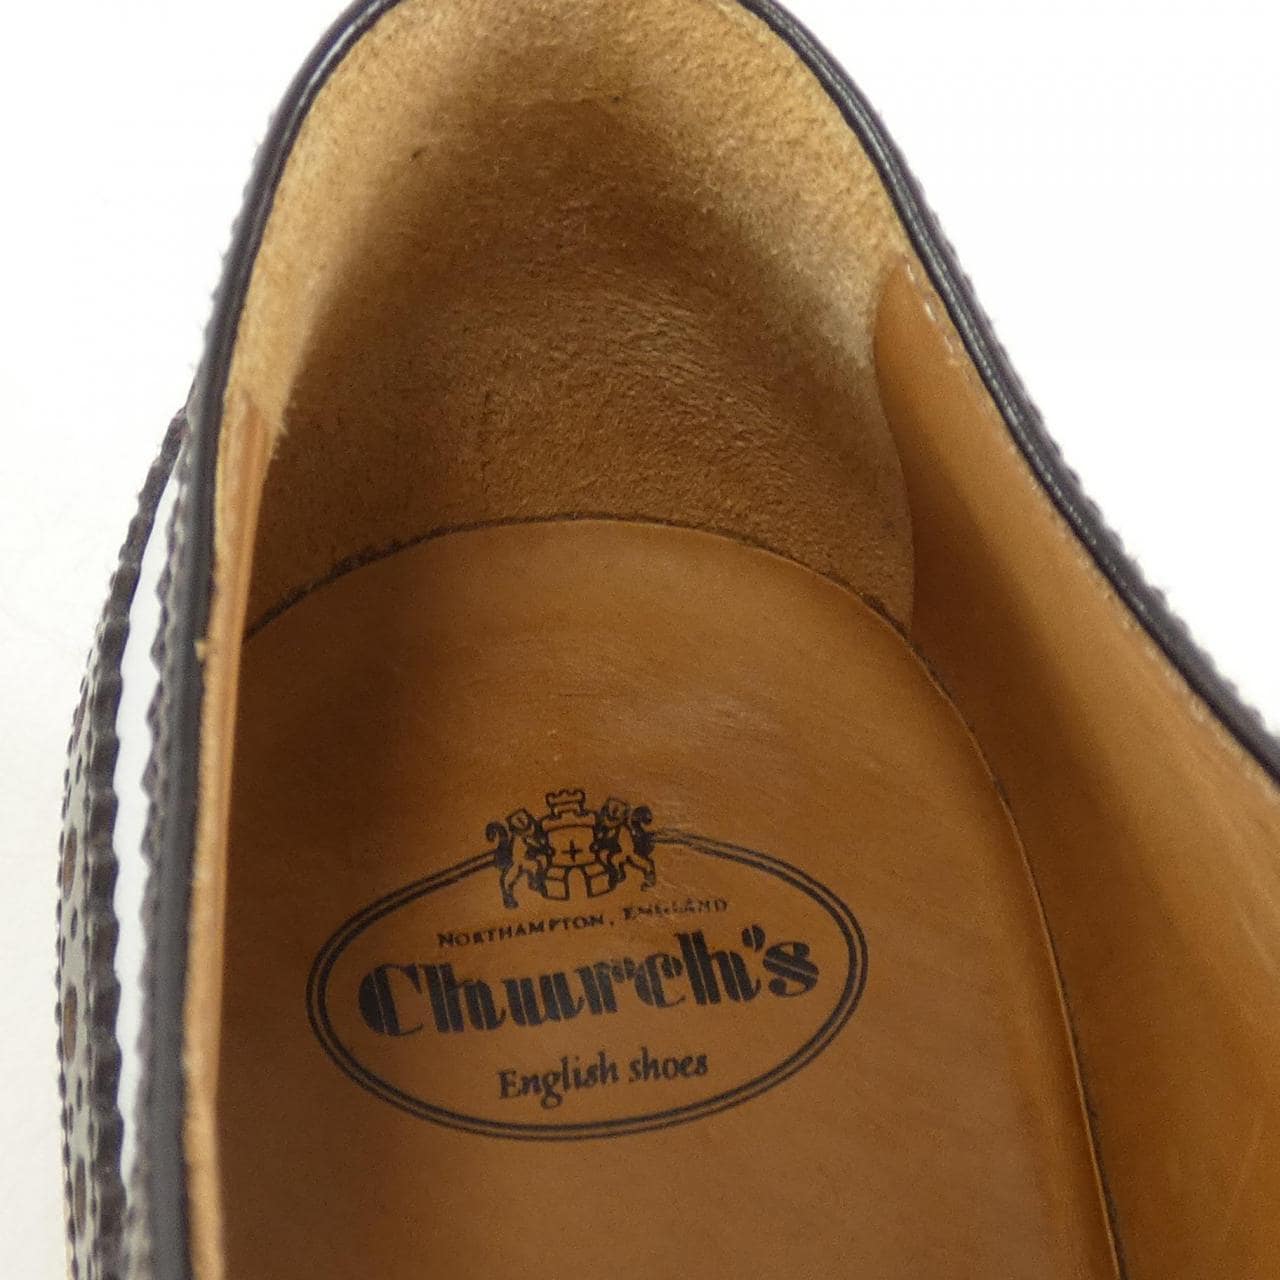 Church CHURCH'S shoes